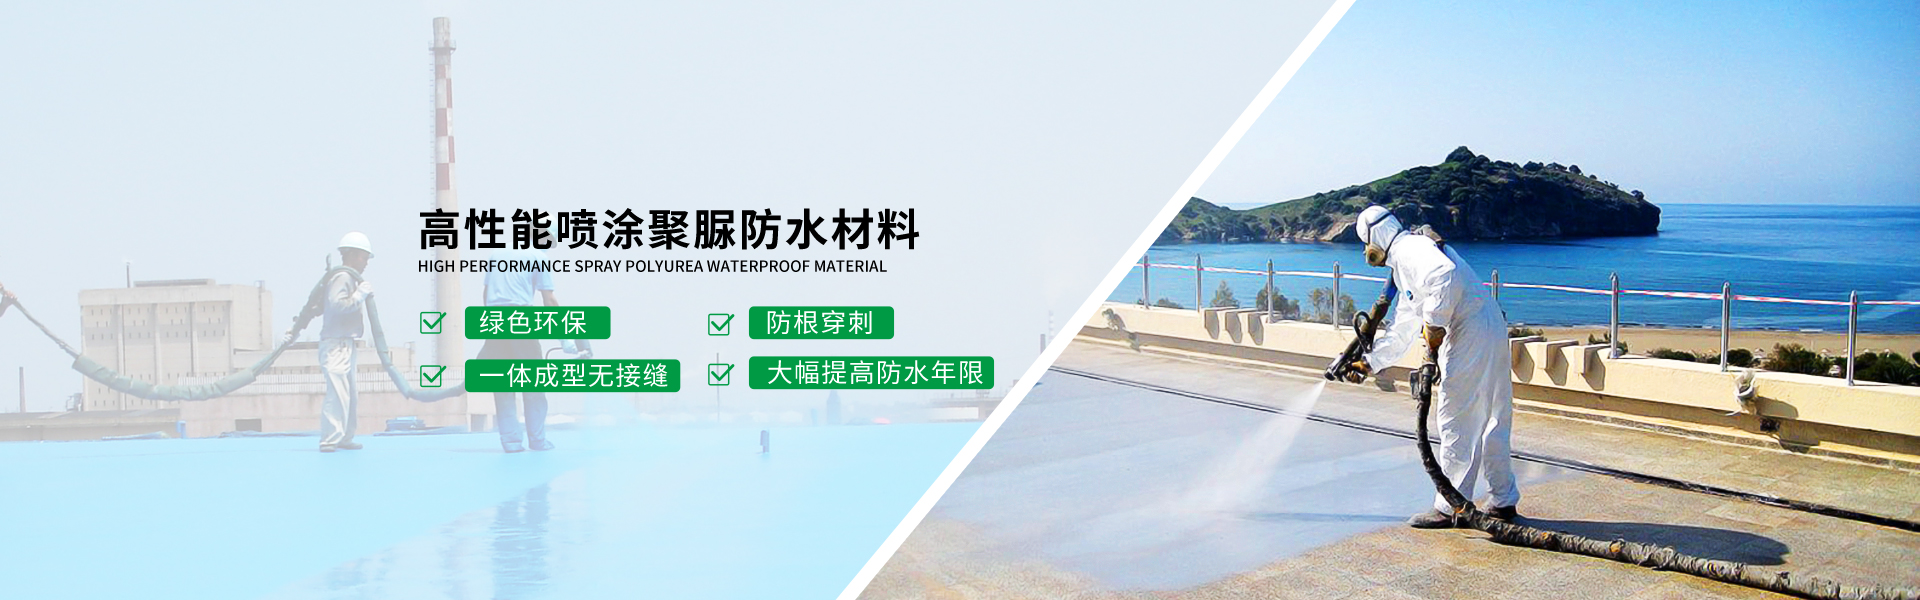 青島海洋新材料主營聚　防水,防水材料等(deng)產(chan)品